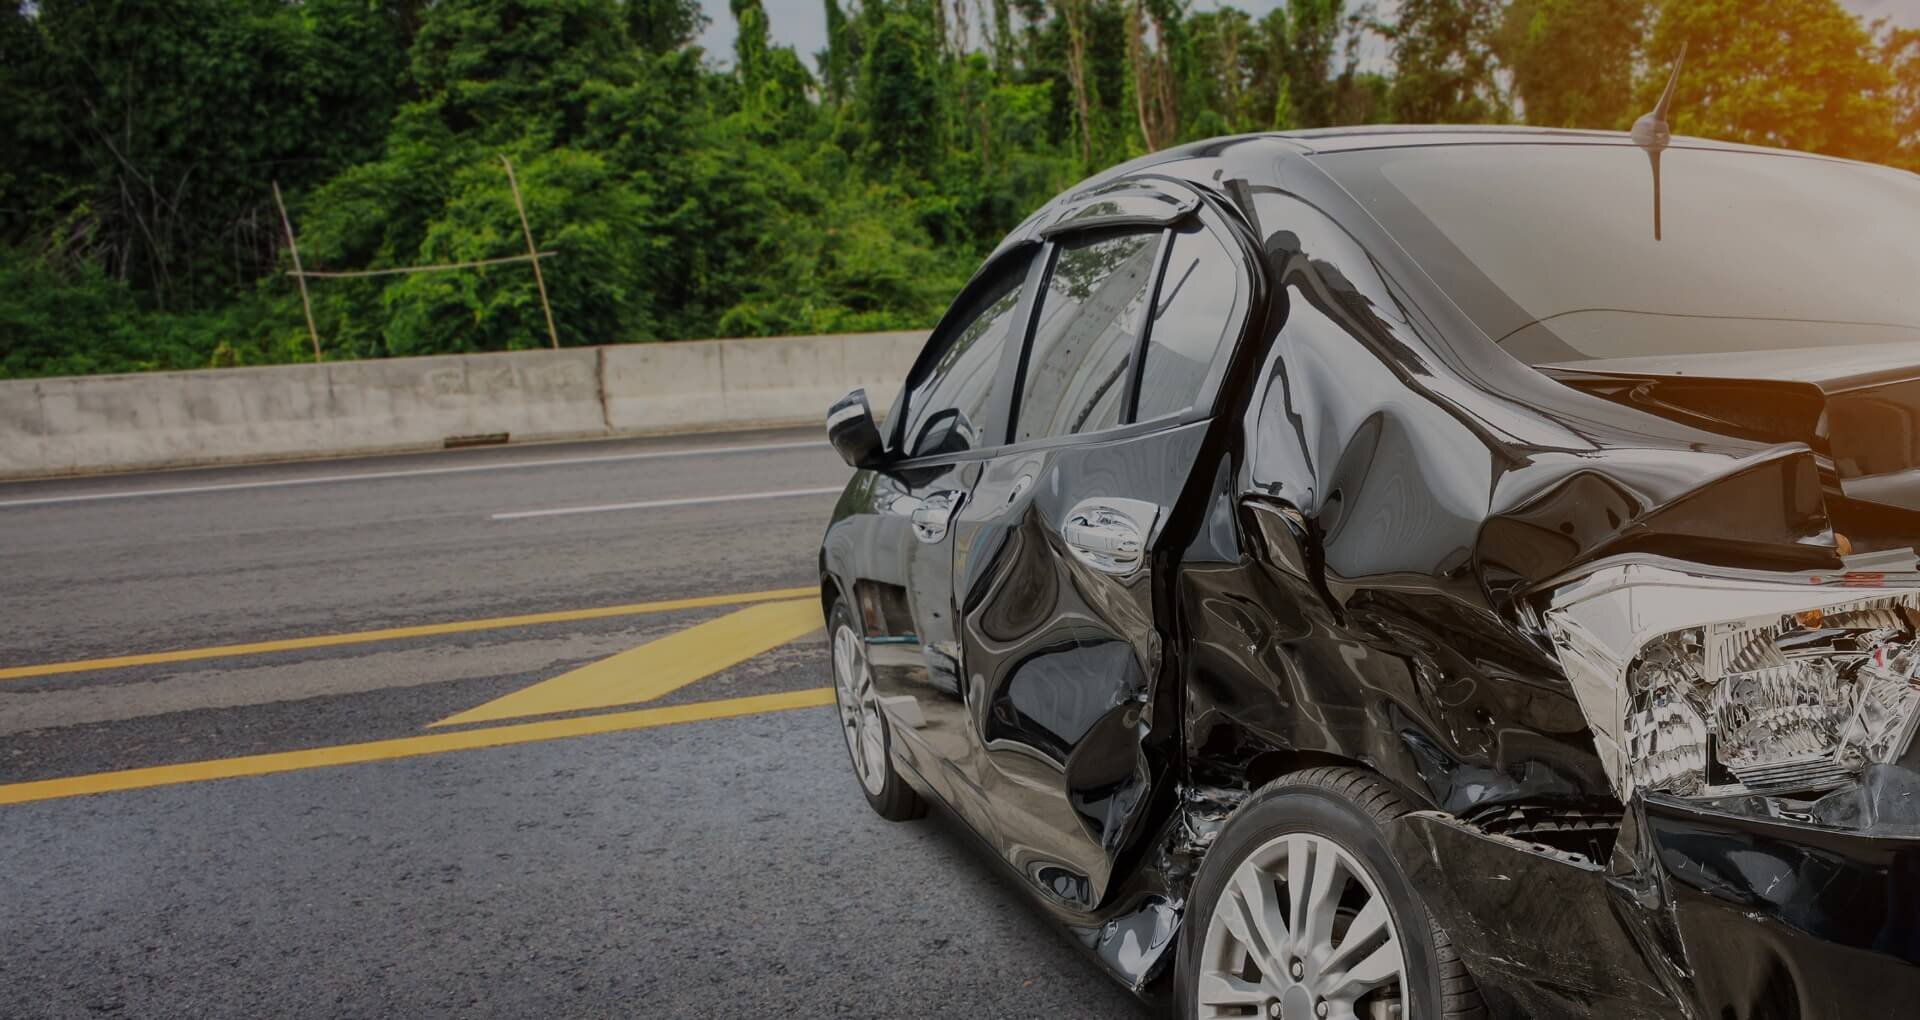 Ngay khi xe bị va chạm hoặc gặp các rủi ro về mất cắp, thuỷ kích hãy liên hệ ngay với công ty bảo hiểm 